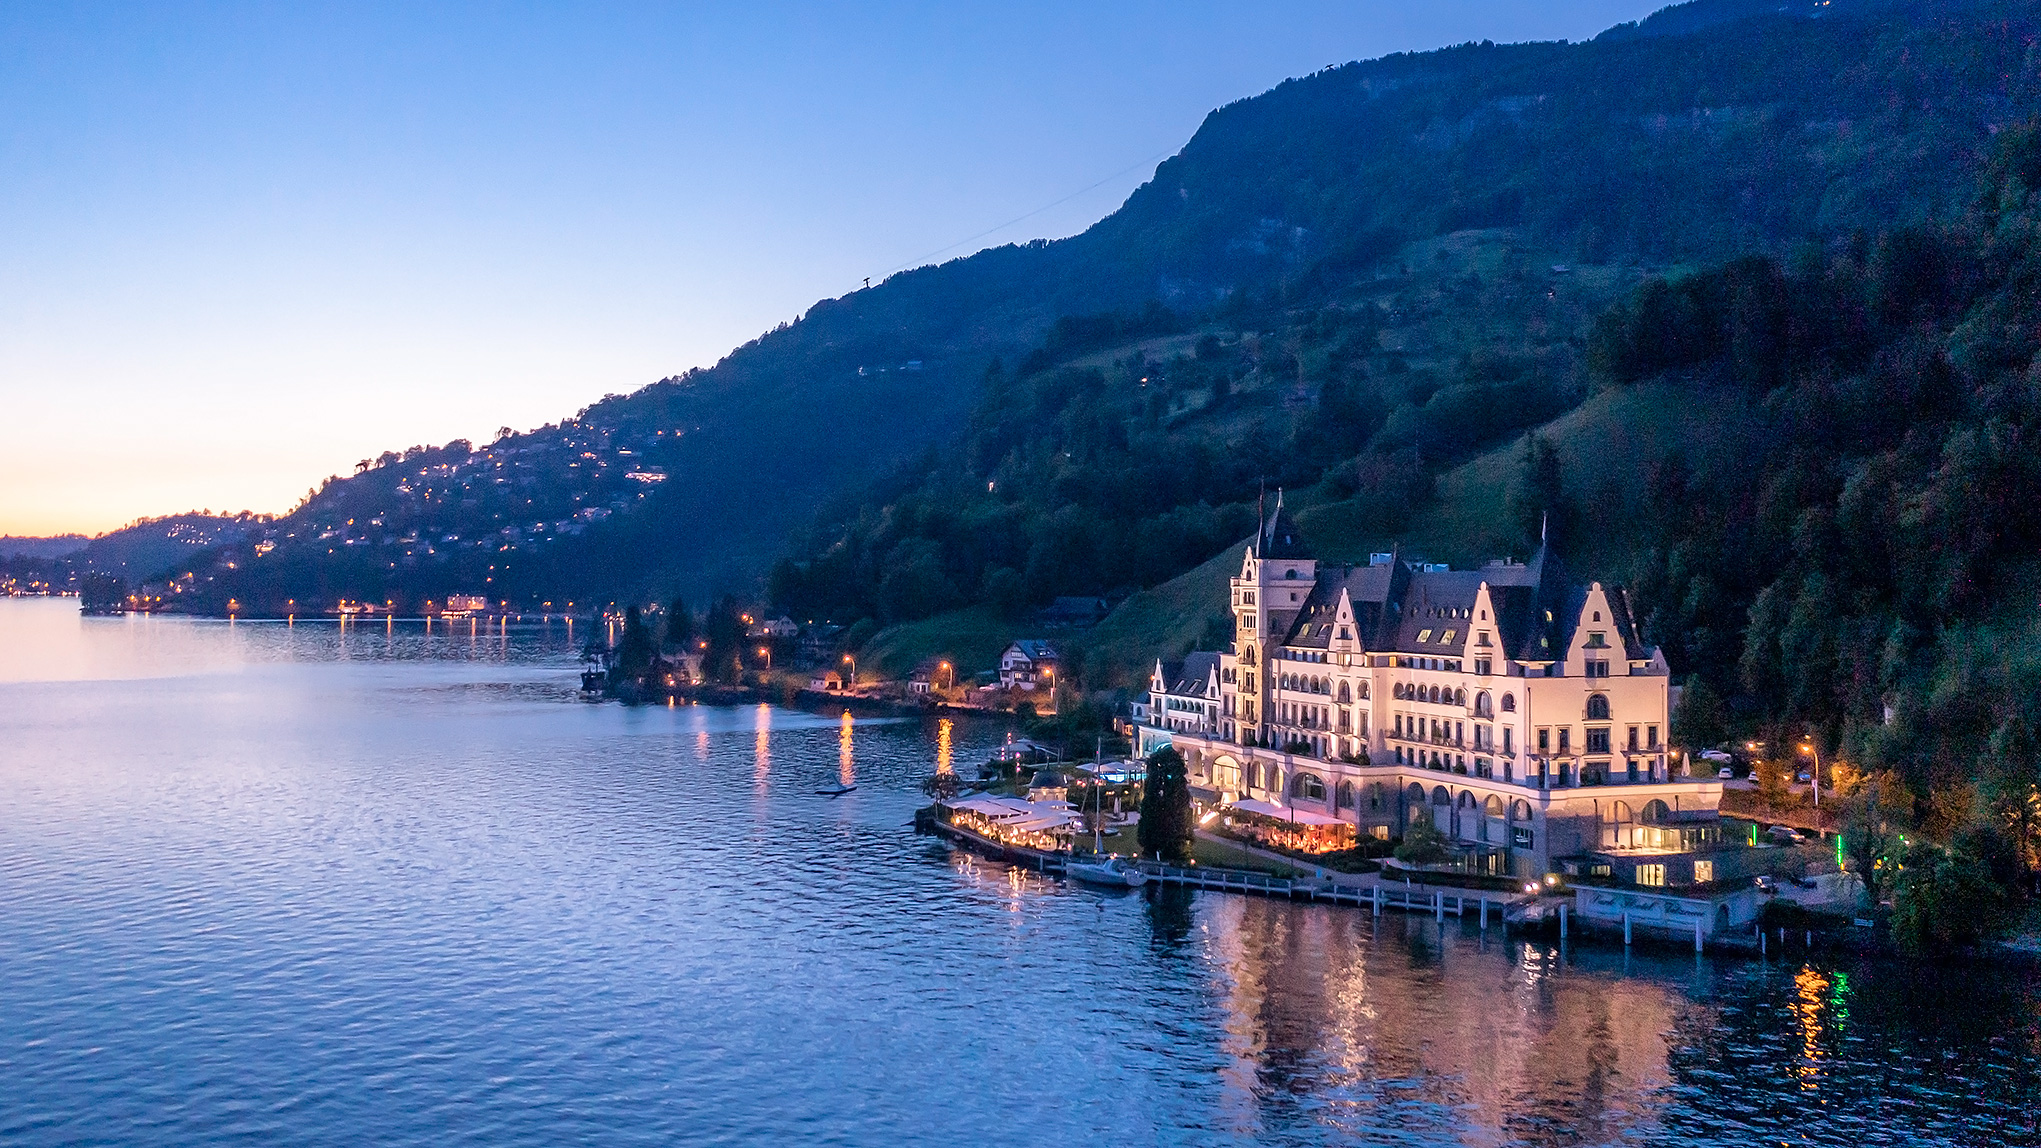 Park Hotel Vitznau fairytale castle on Lake Lucerne